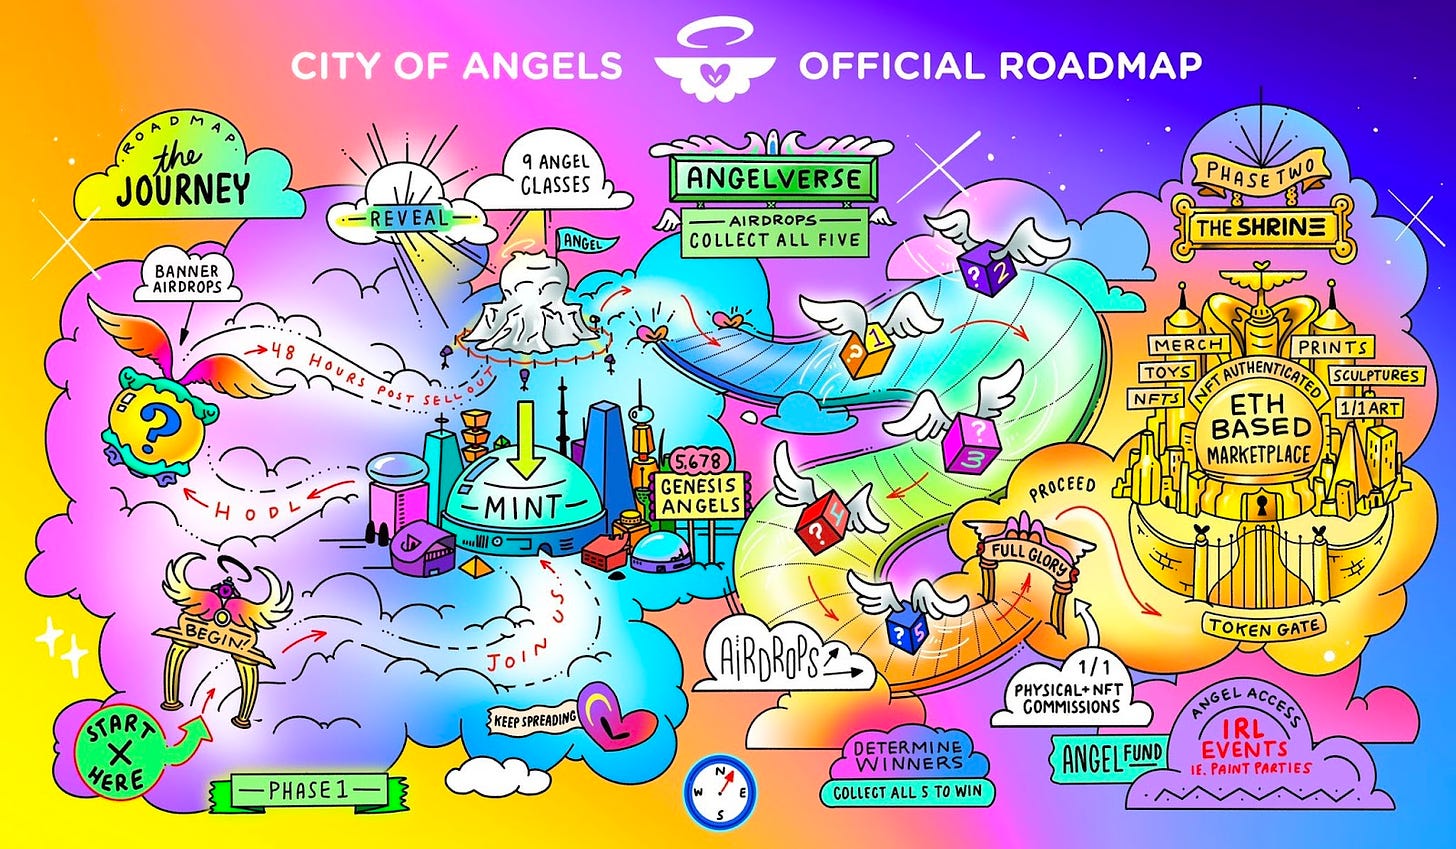 City of Angels Roadmap